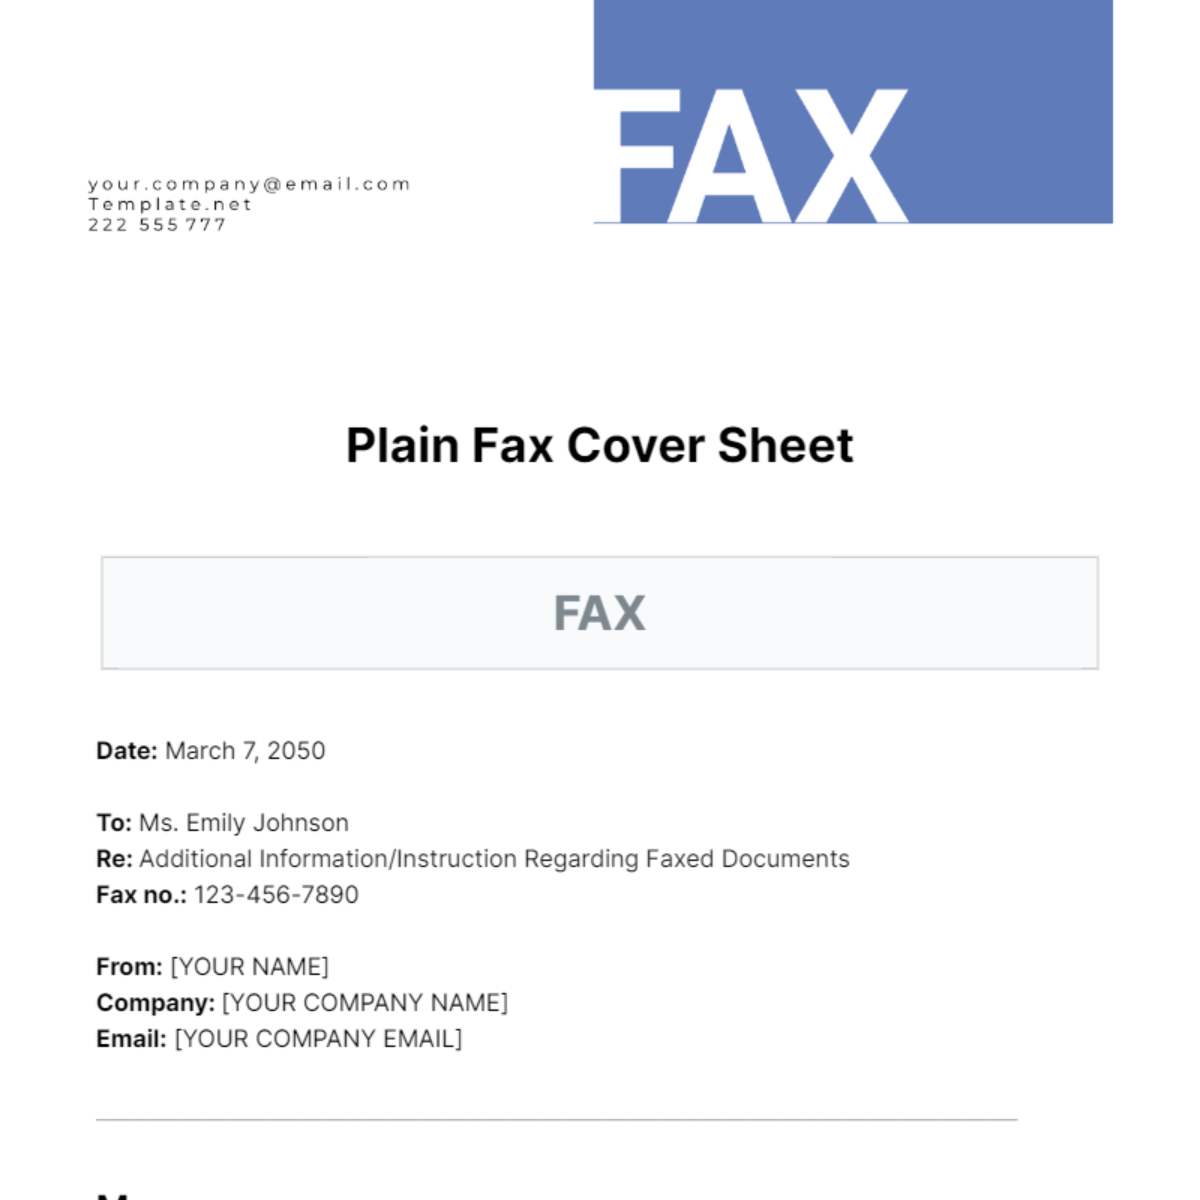 Plain Fax Cover Sheet